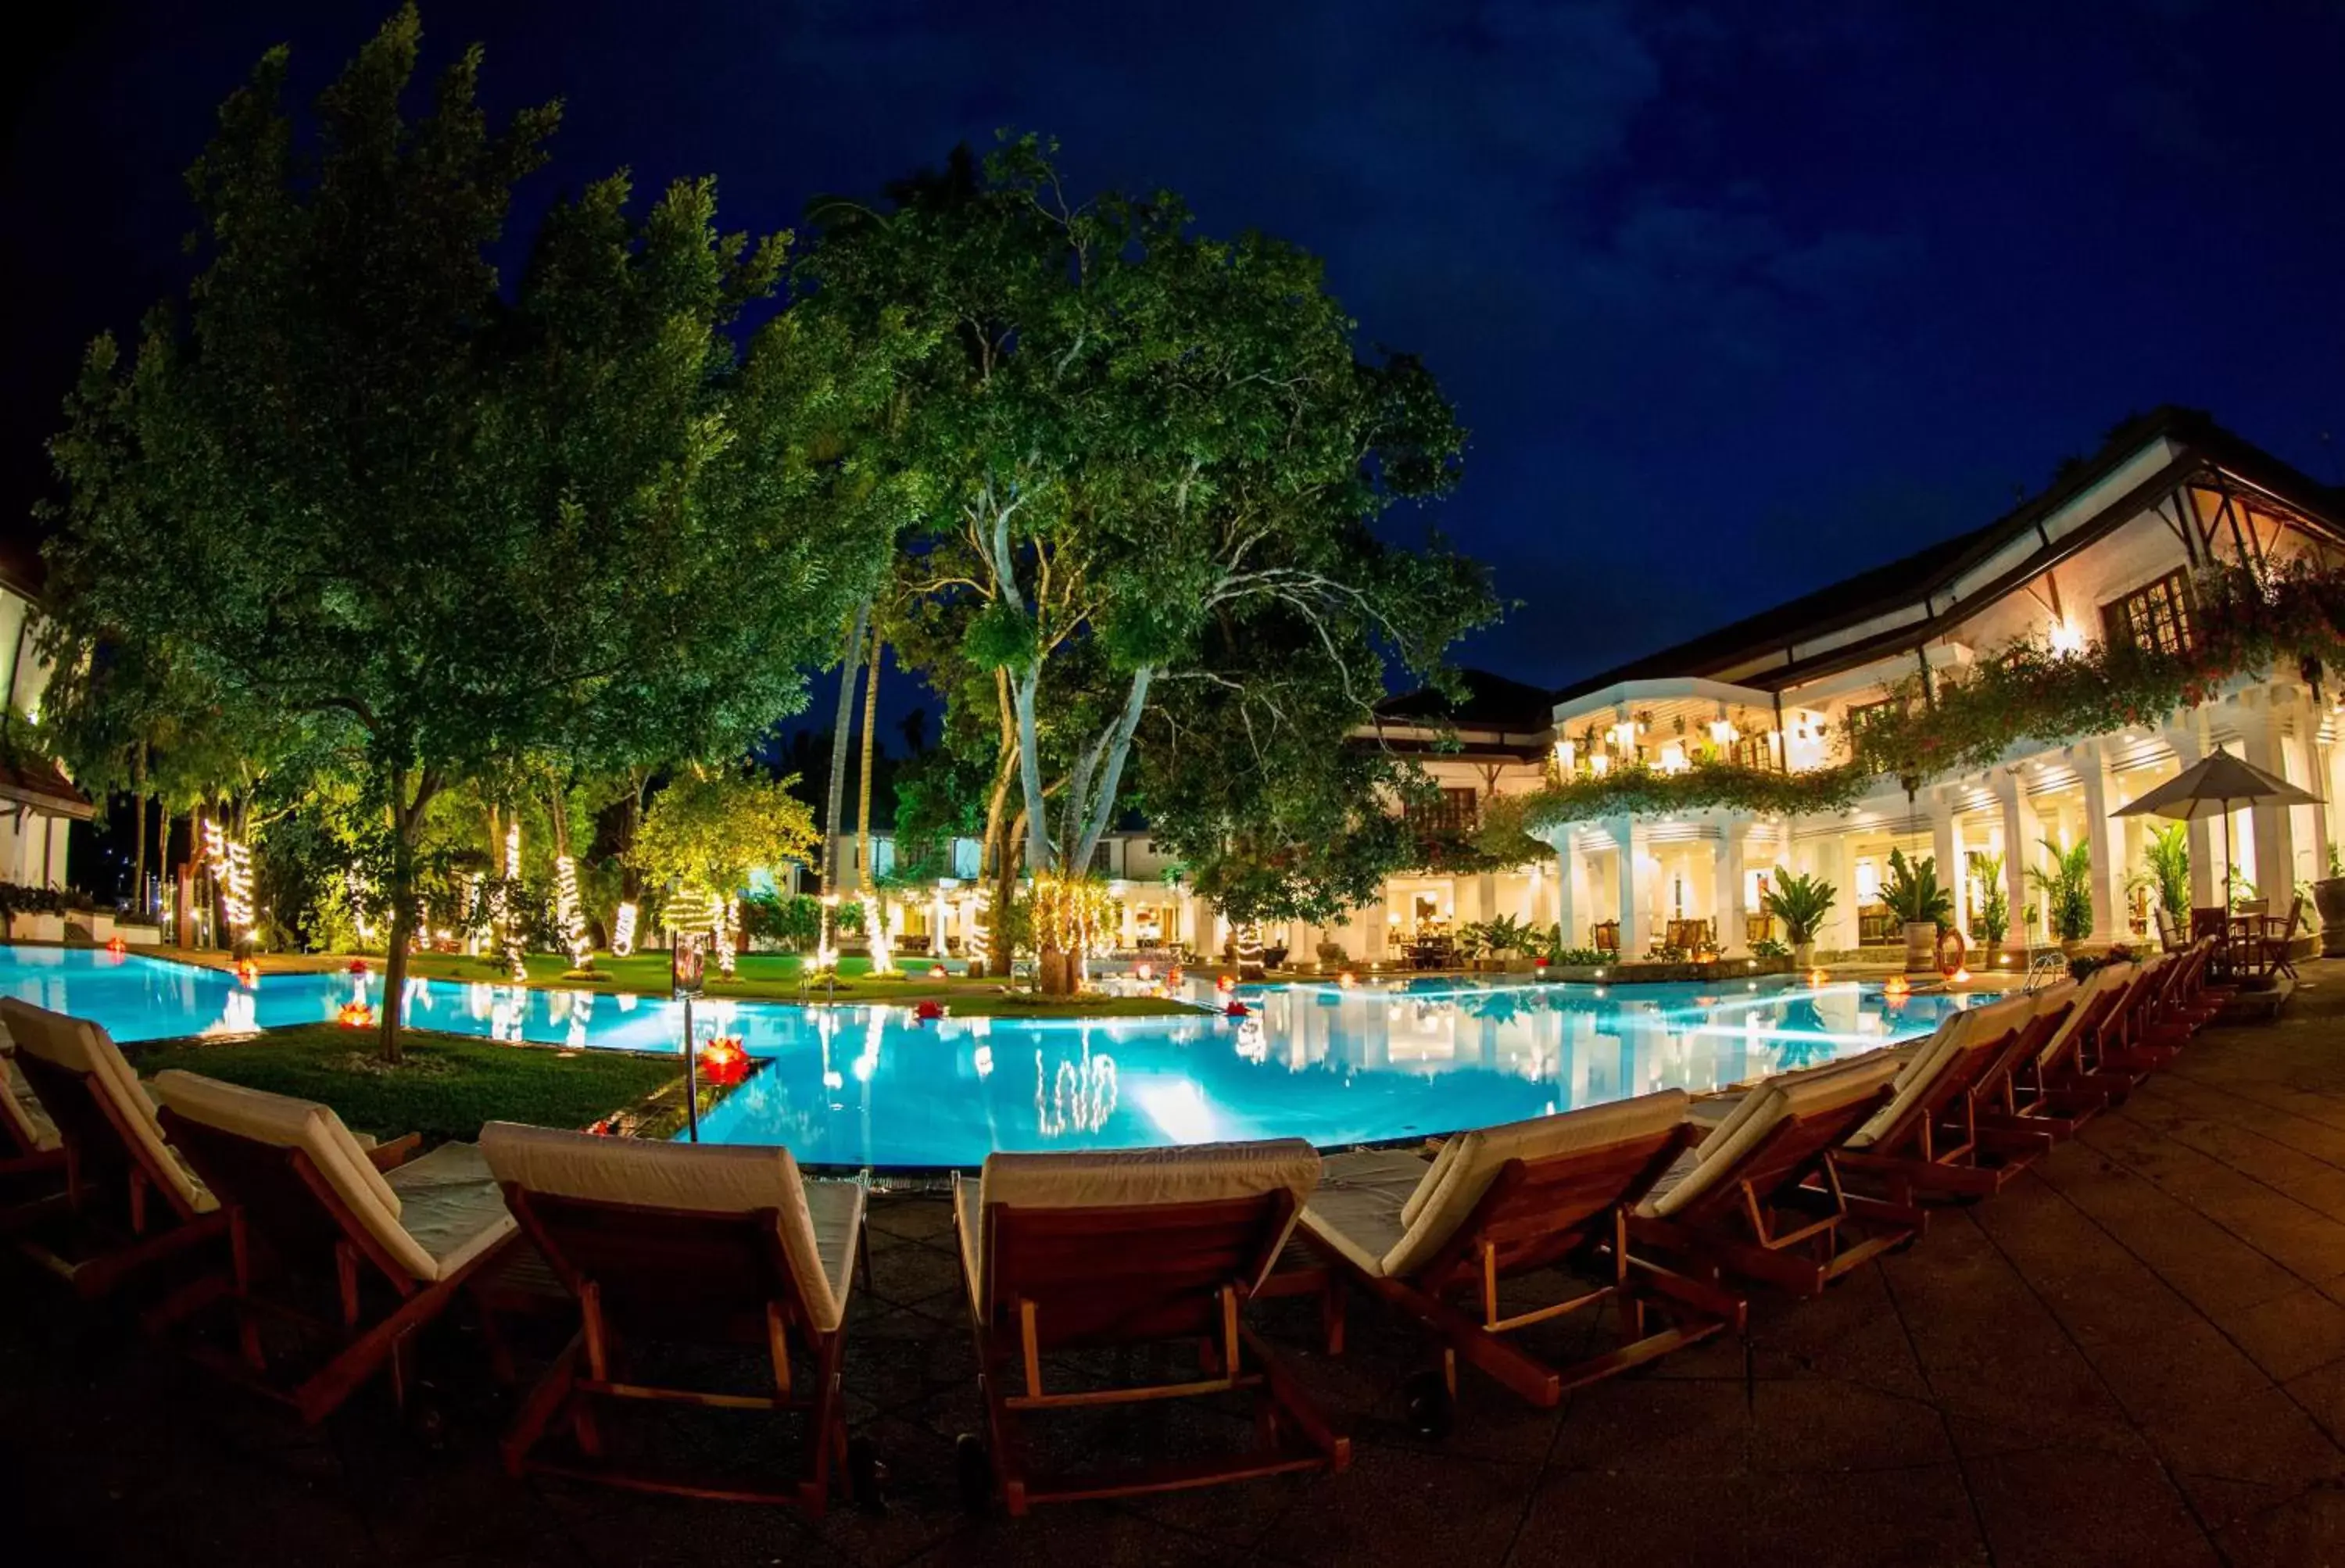 Swimming Pool in Mahaweli Reach Hotel